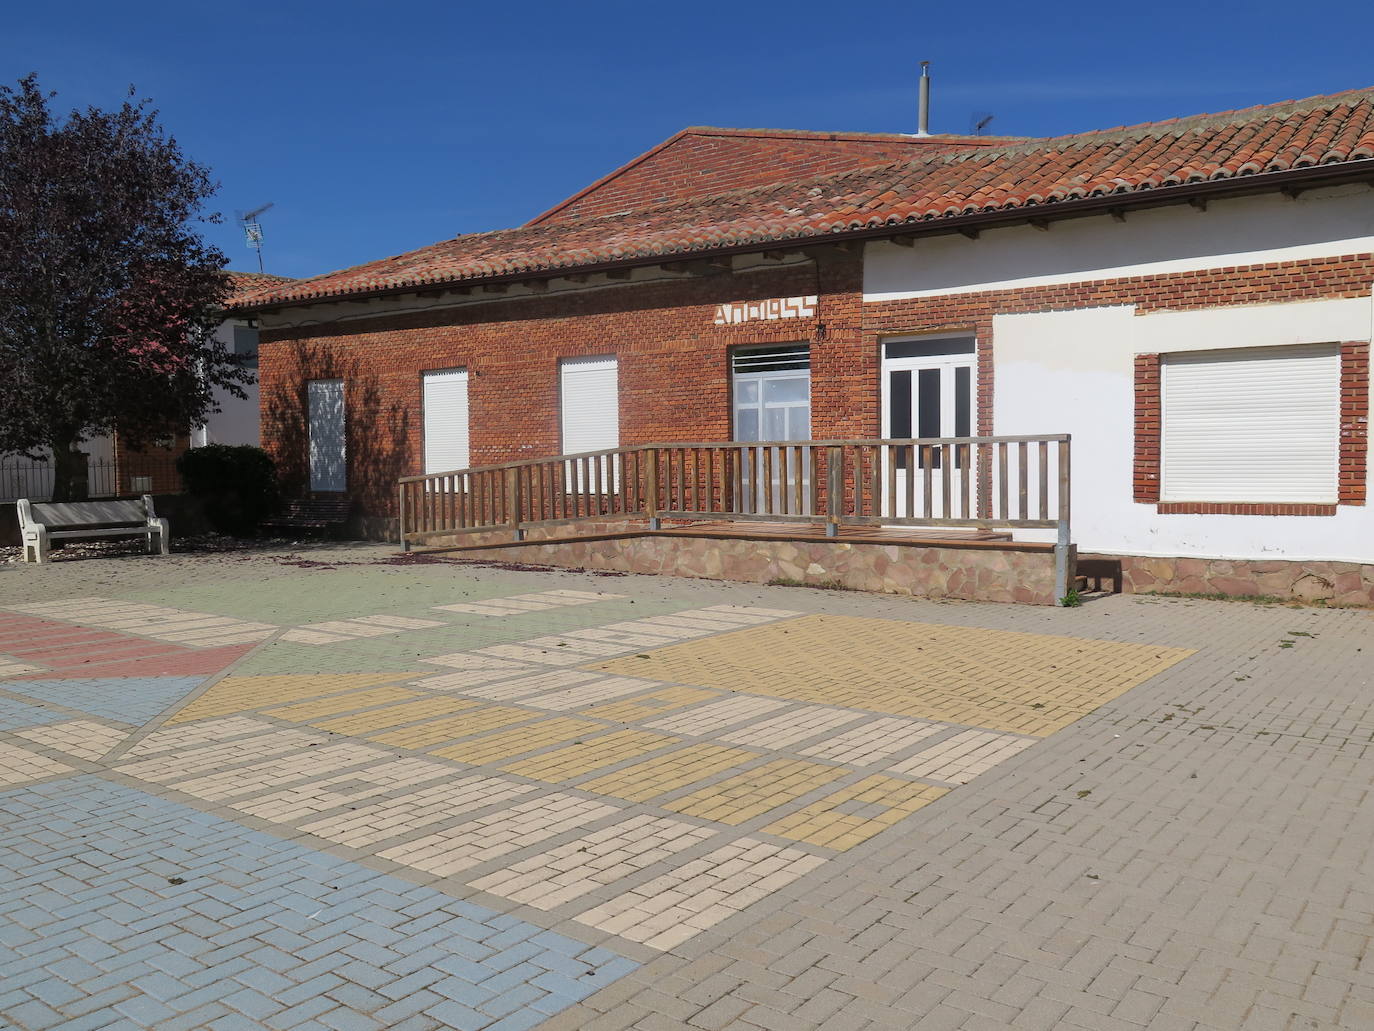 Fotos: El Colegio de Palacios de Fontecha cierra por no tener alumnos